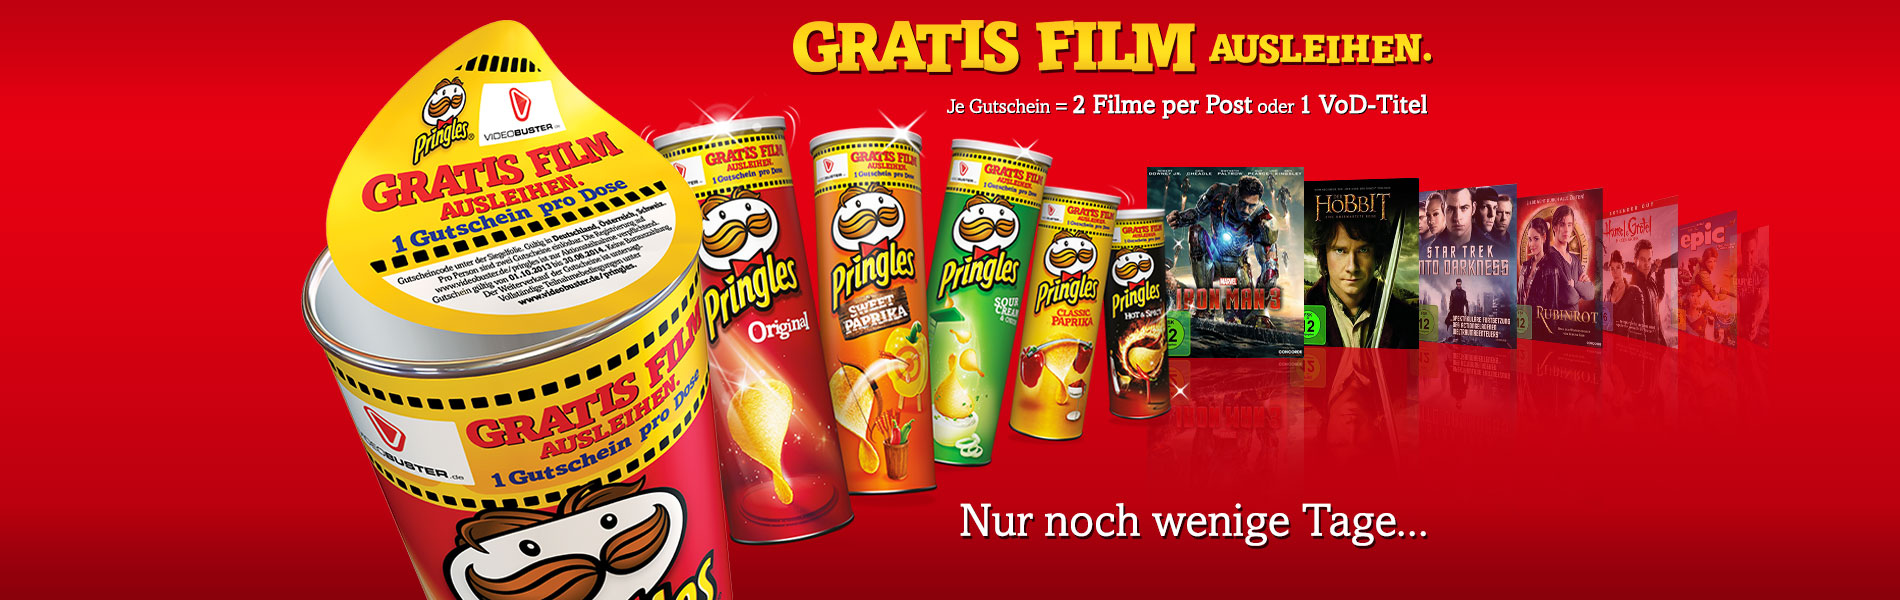 Gratis Film ausleihen mit Pringles und VIDEOBUSTER.de